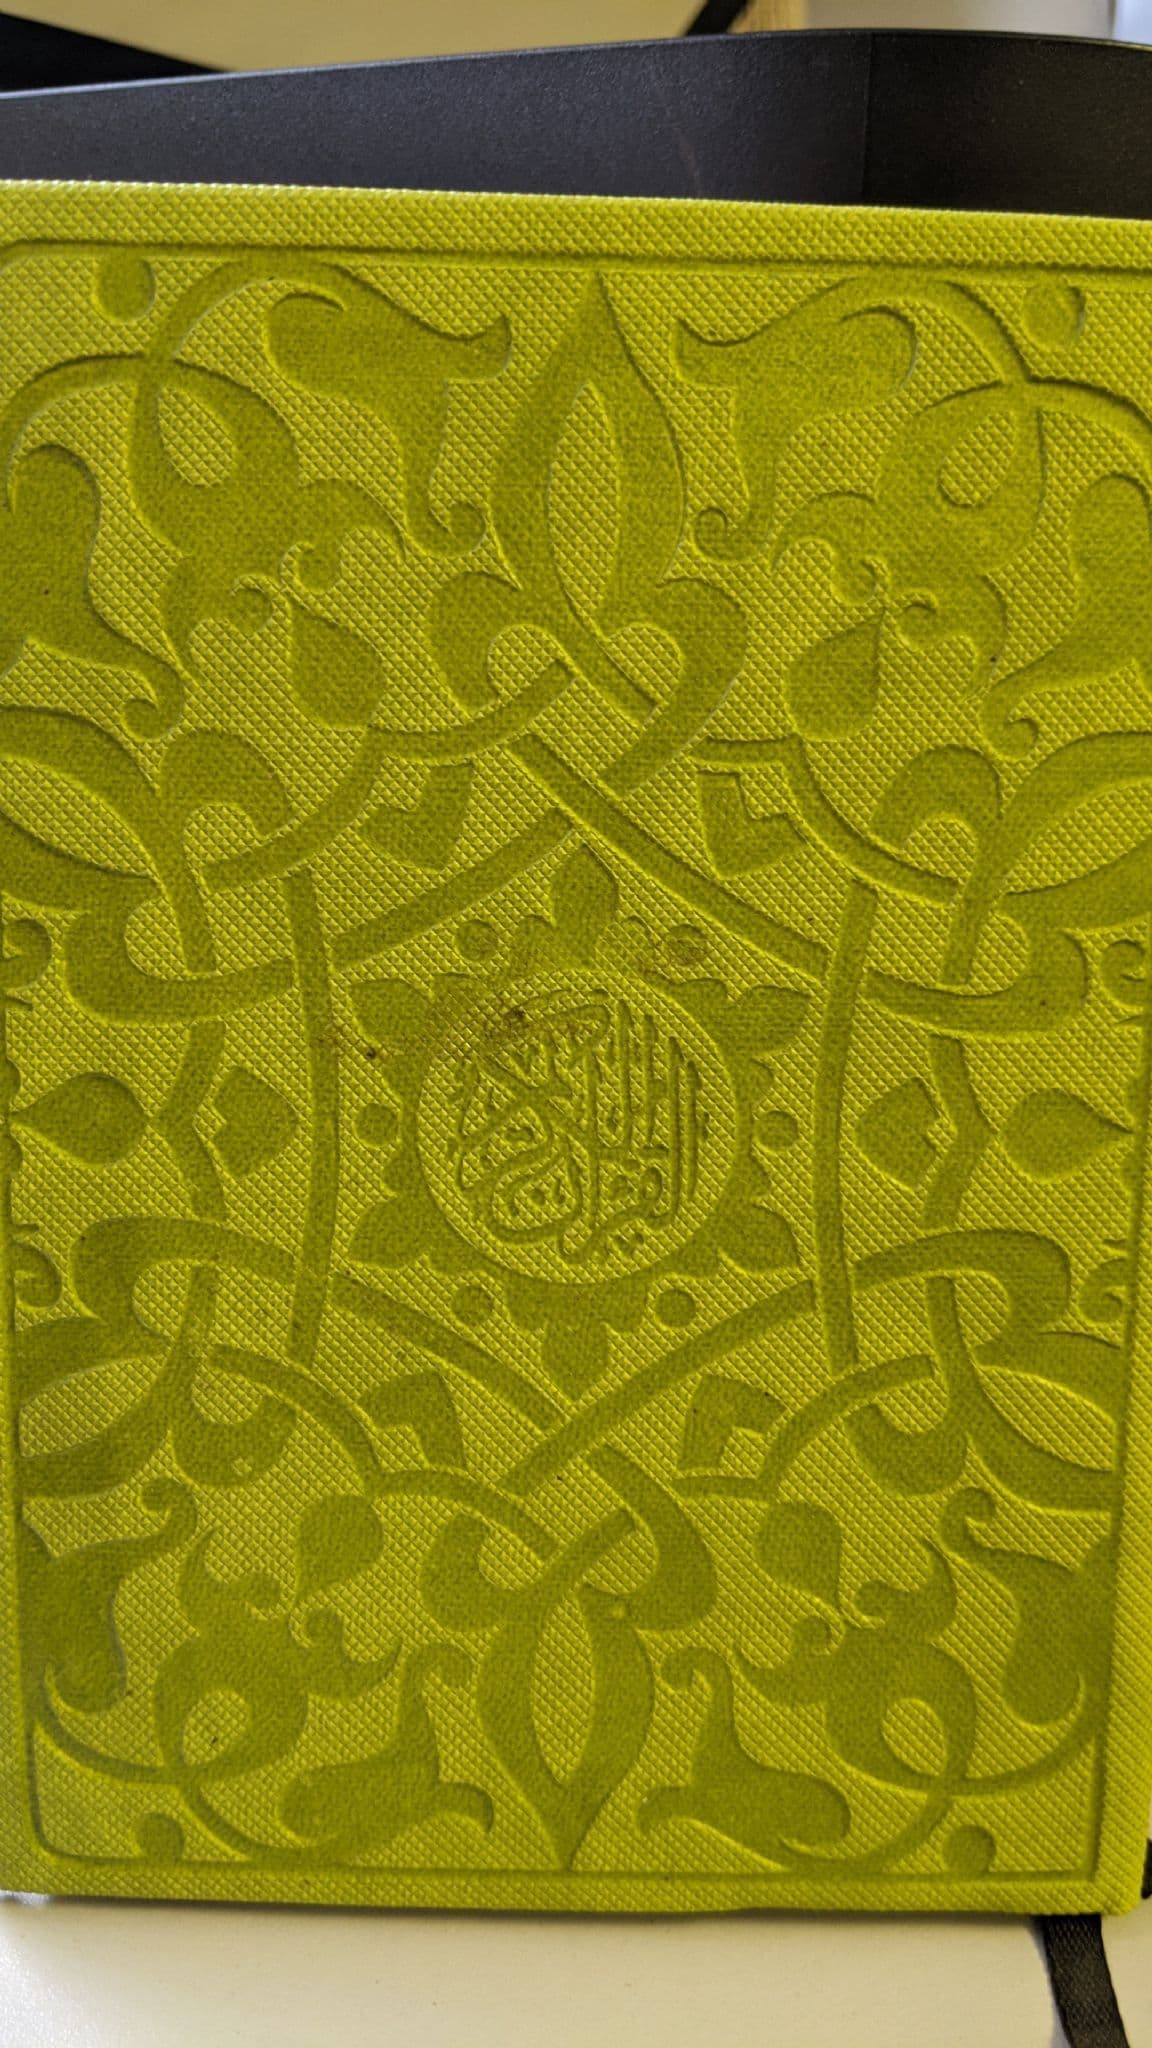 القرآن الكريم بالرسم العثماني برواية حفص عن عاصم - نسخة صغيرة الحجم لونين